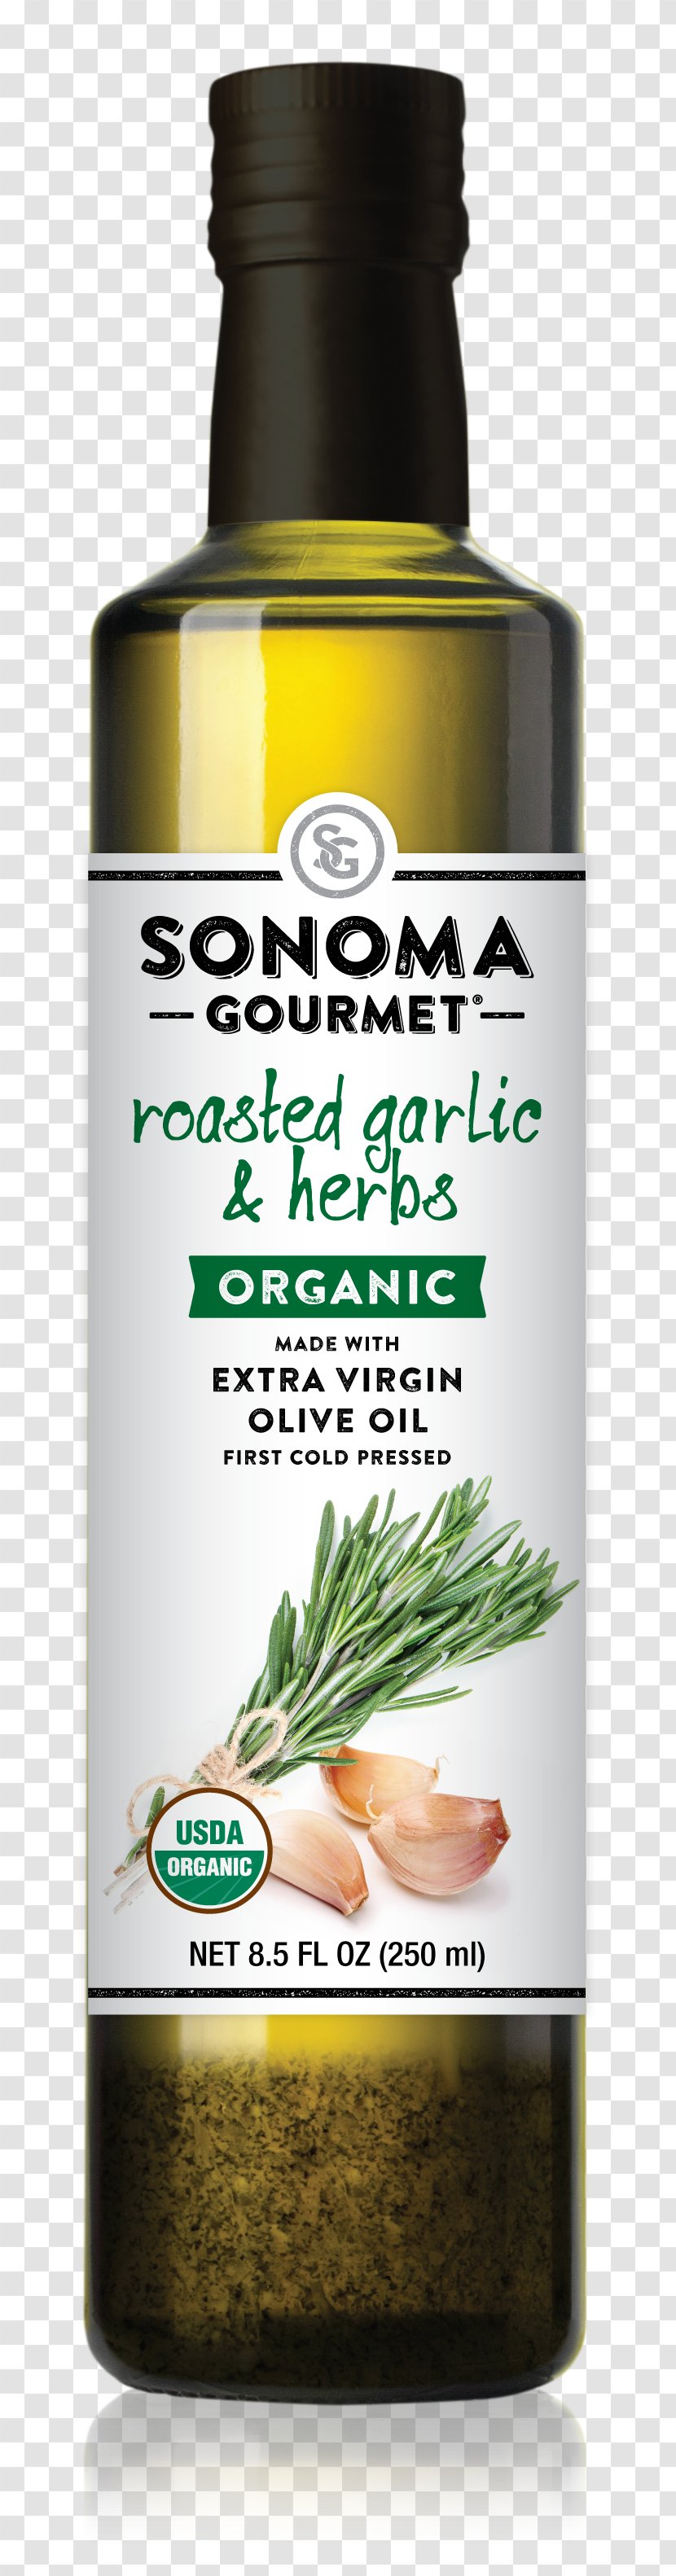 Sonoma Olive Oil Herb Transparent PNG